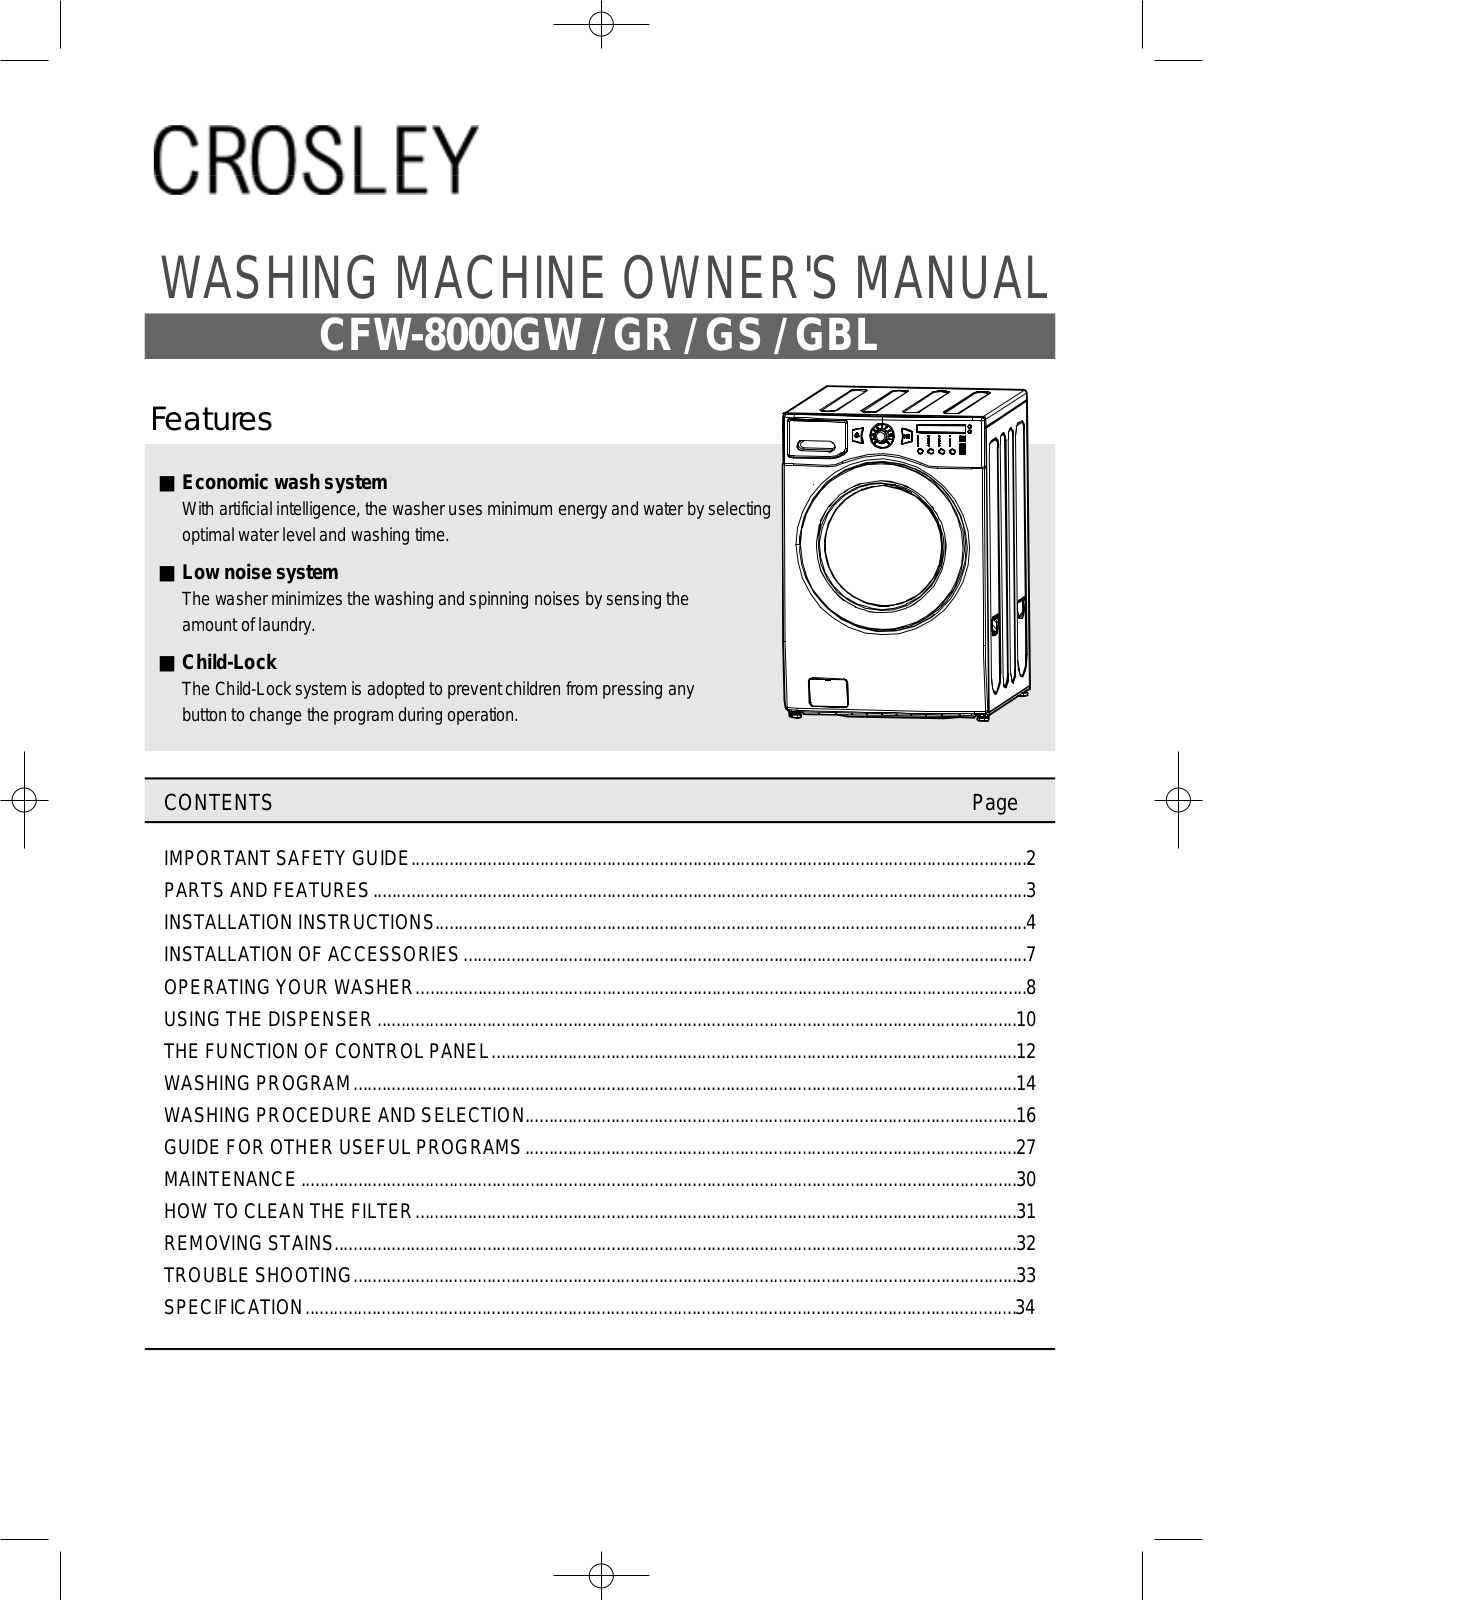 Crosley CFW-8000GR, CFW-8000GBL, CFW-8000GW, CFW-8000GS User Manual